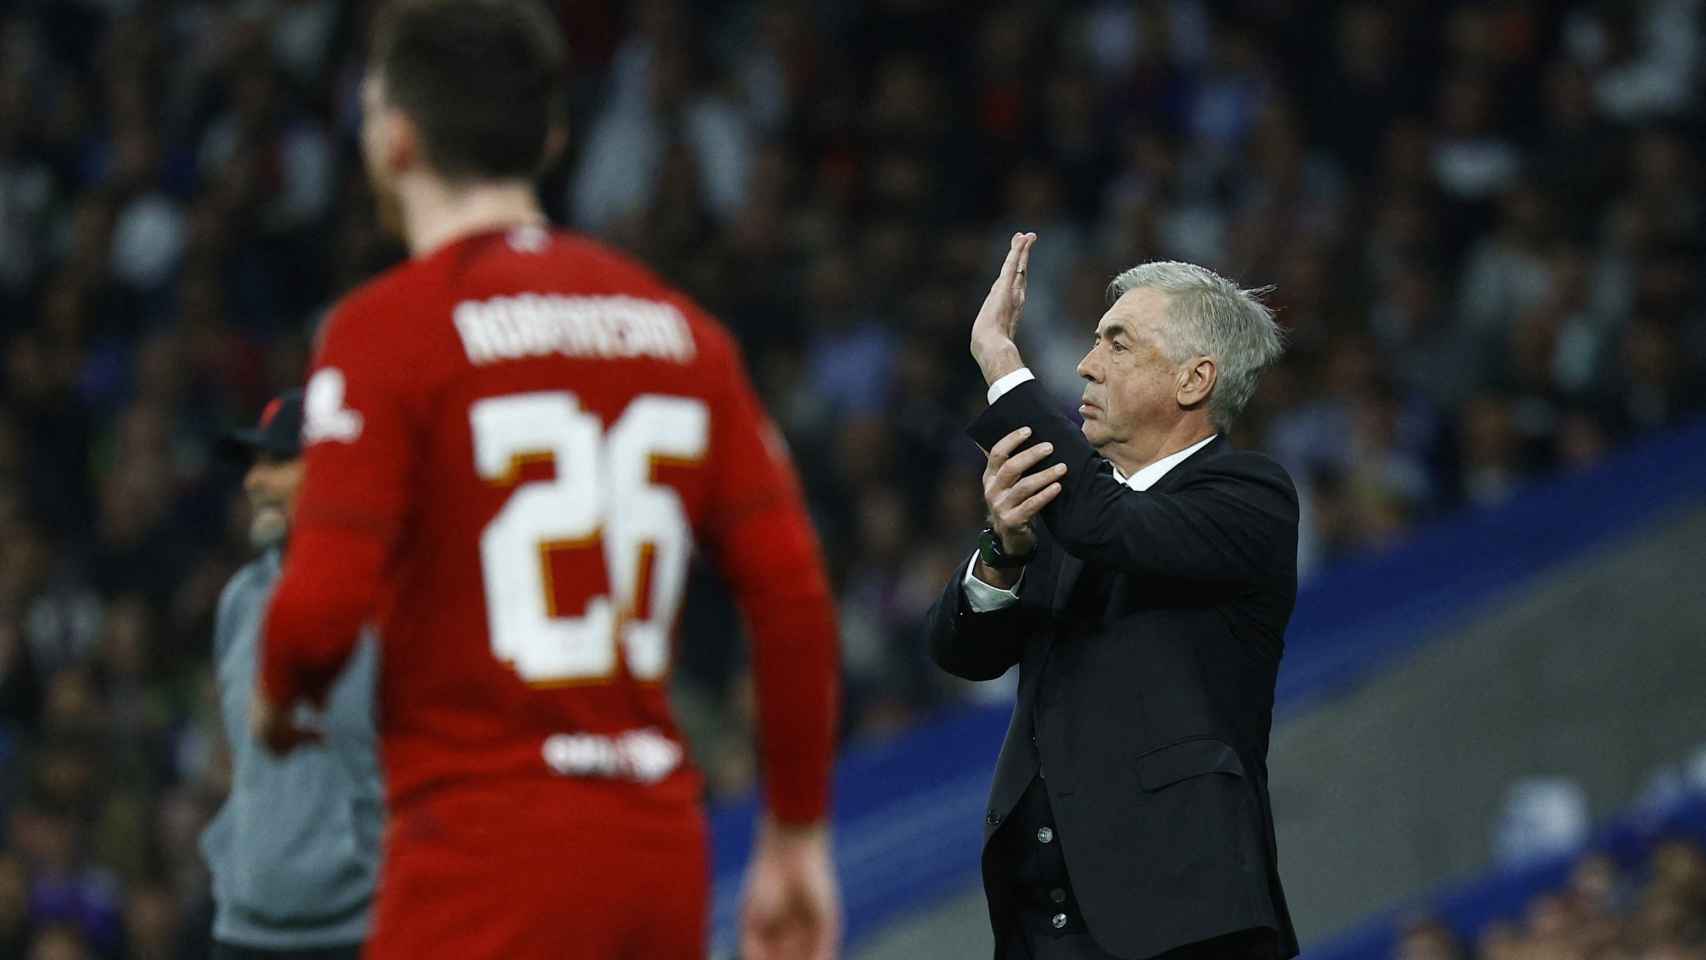 Ancelotti da instrucciones desde la banda a los jugadores del Real Madrid.